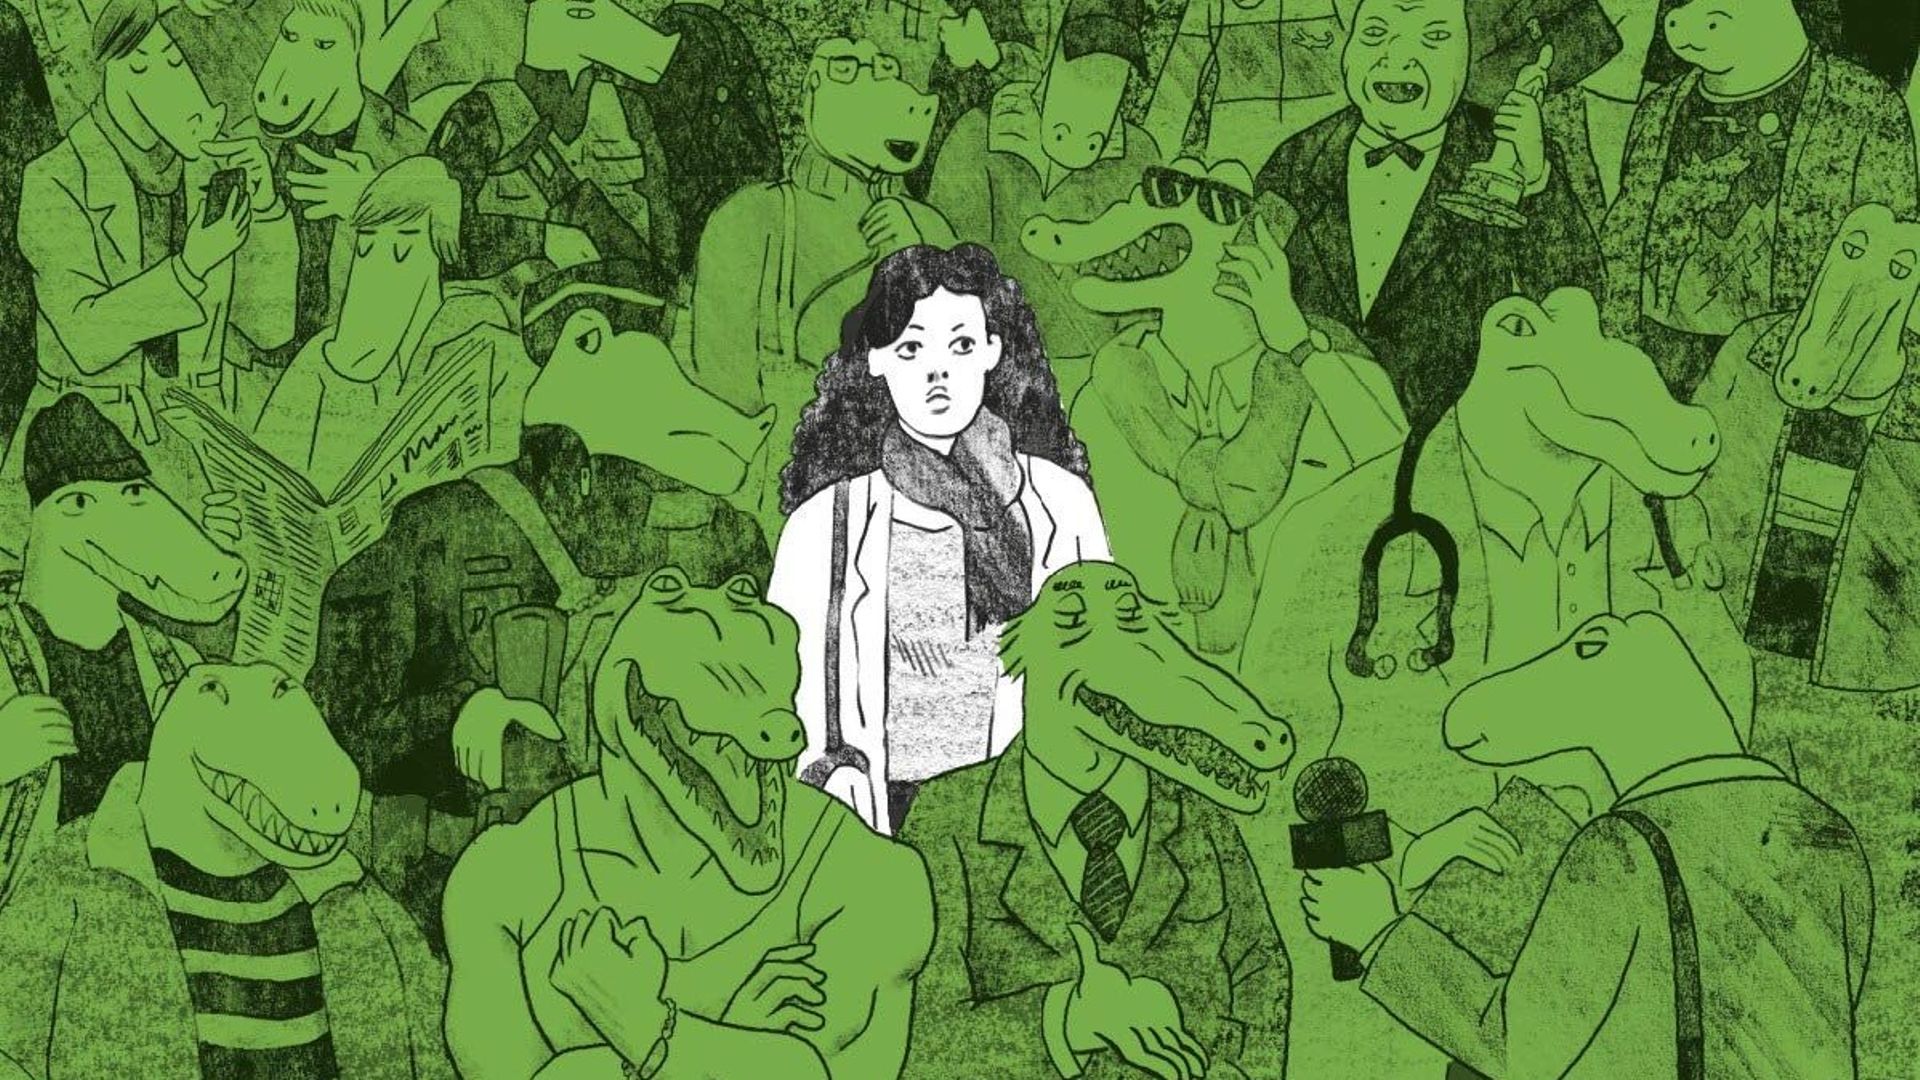 Une bande dessinée pleine de crocodiles pour parler de harcèlement